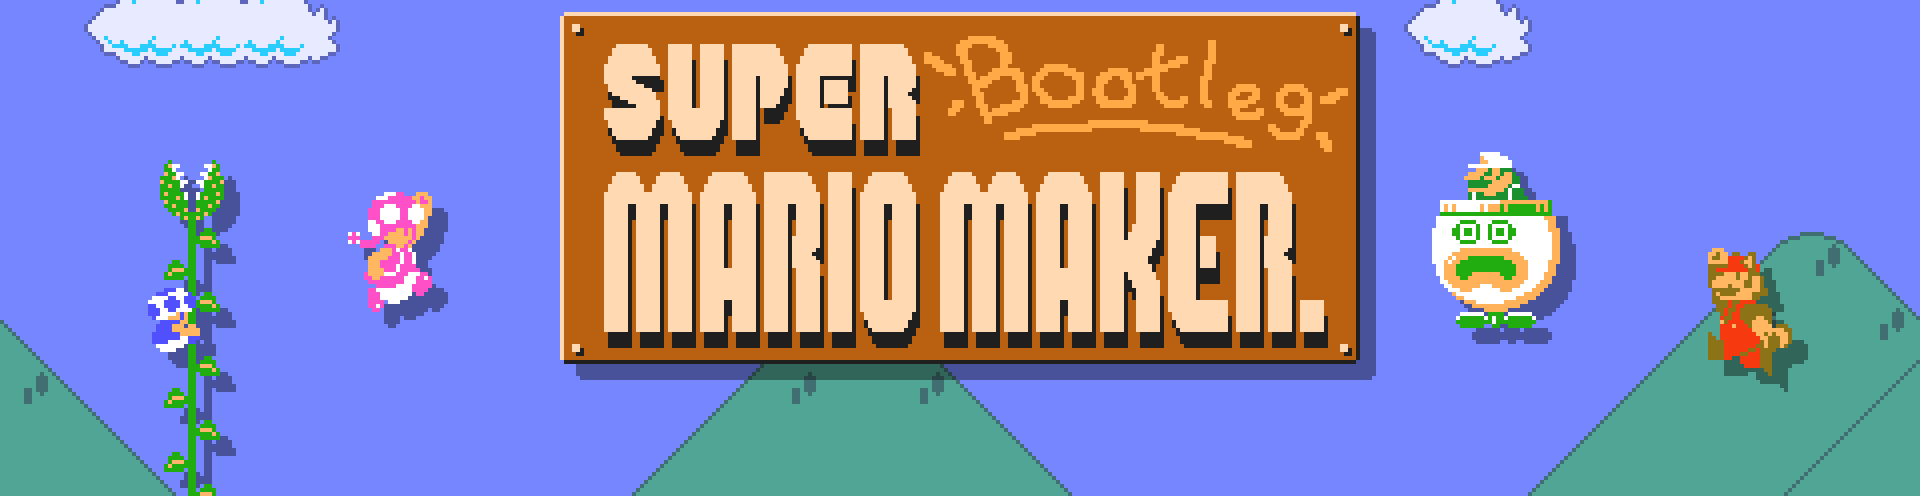 Super Bootleg Mario Maker